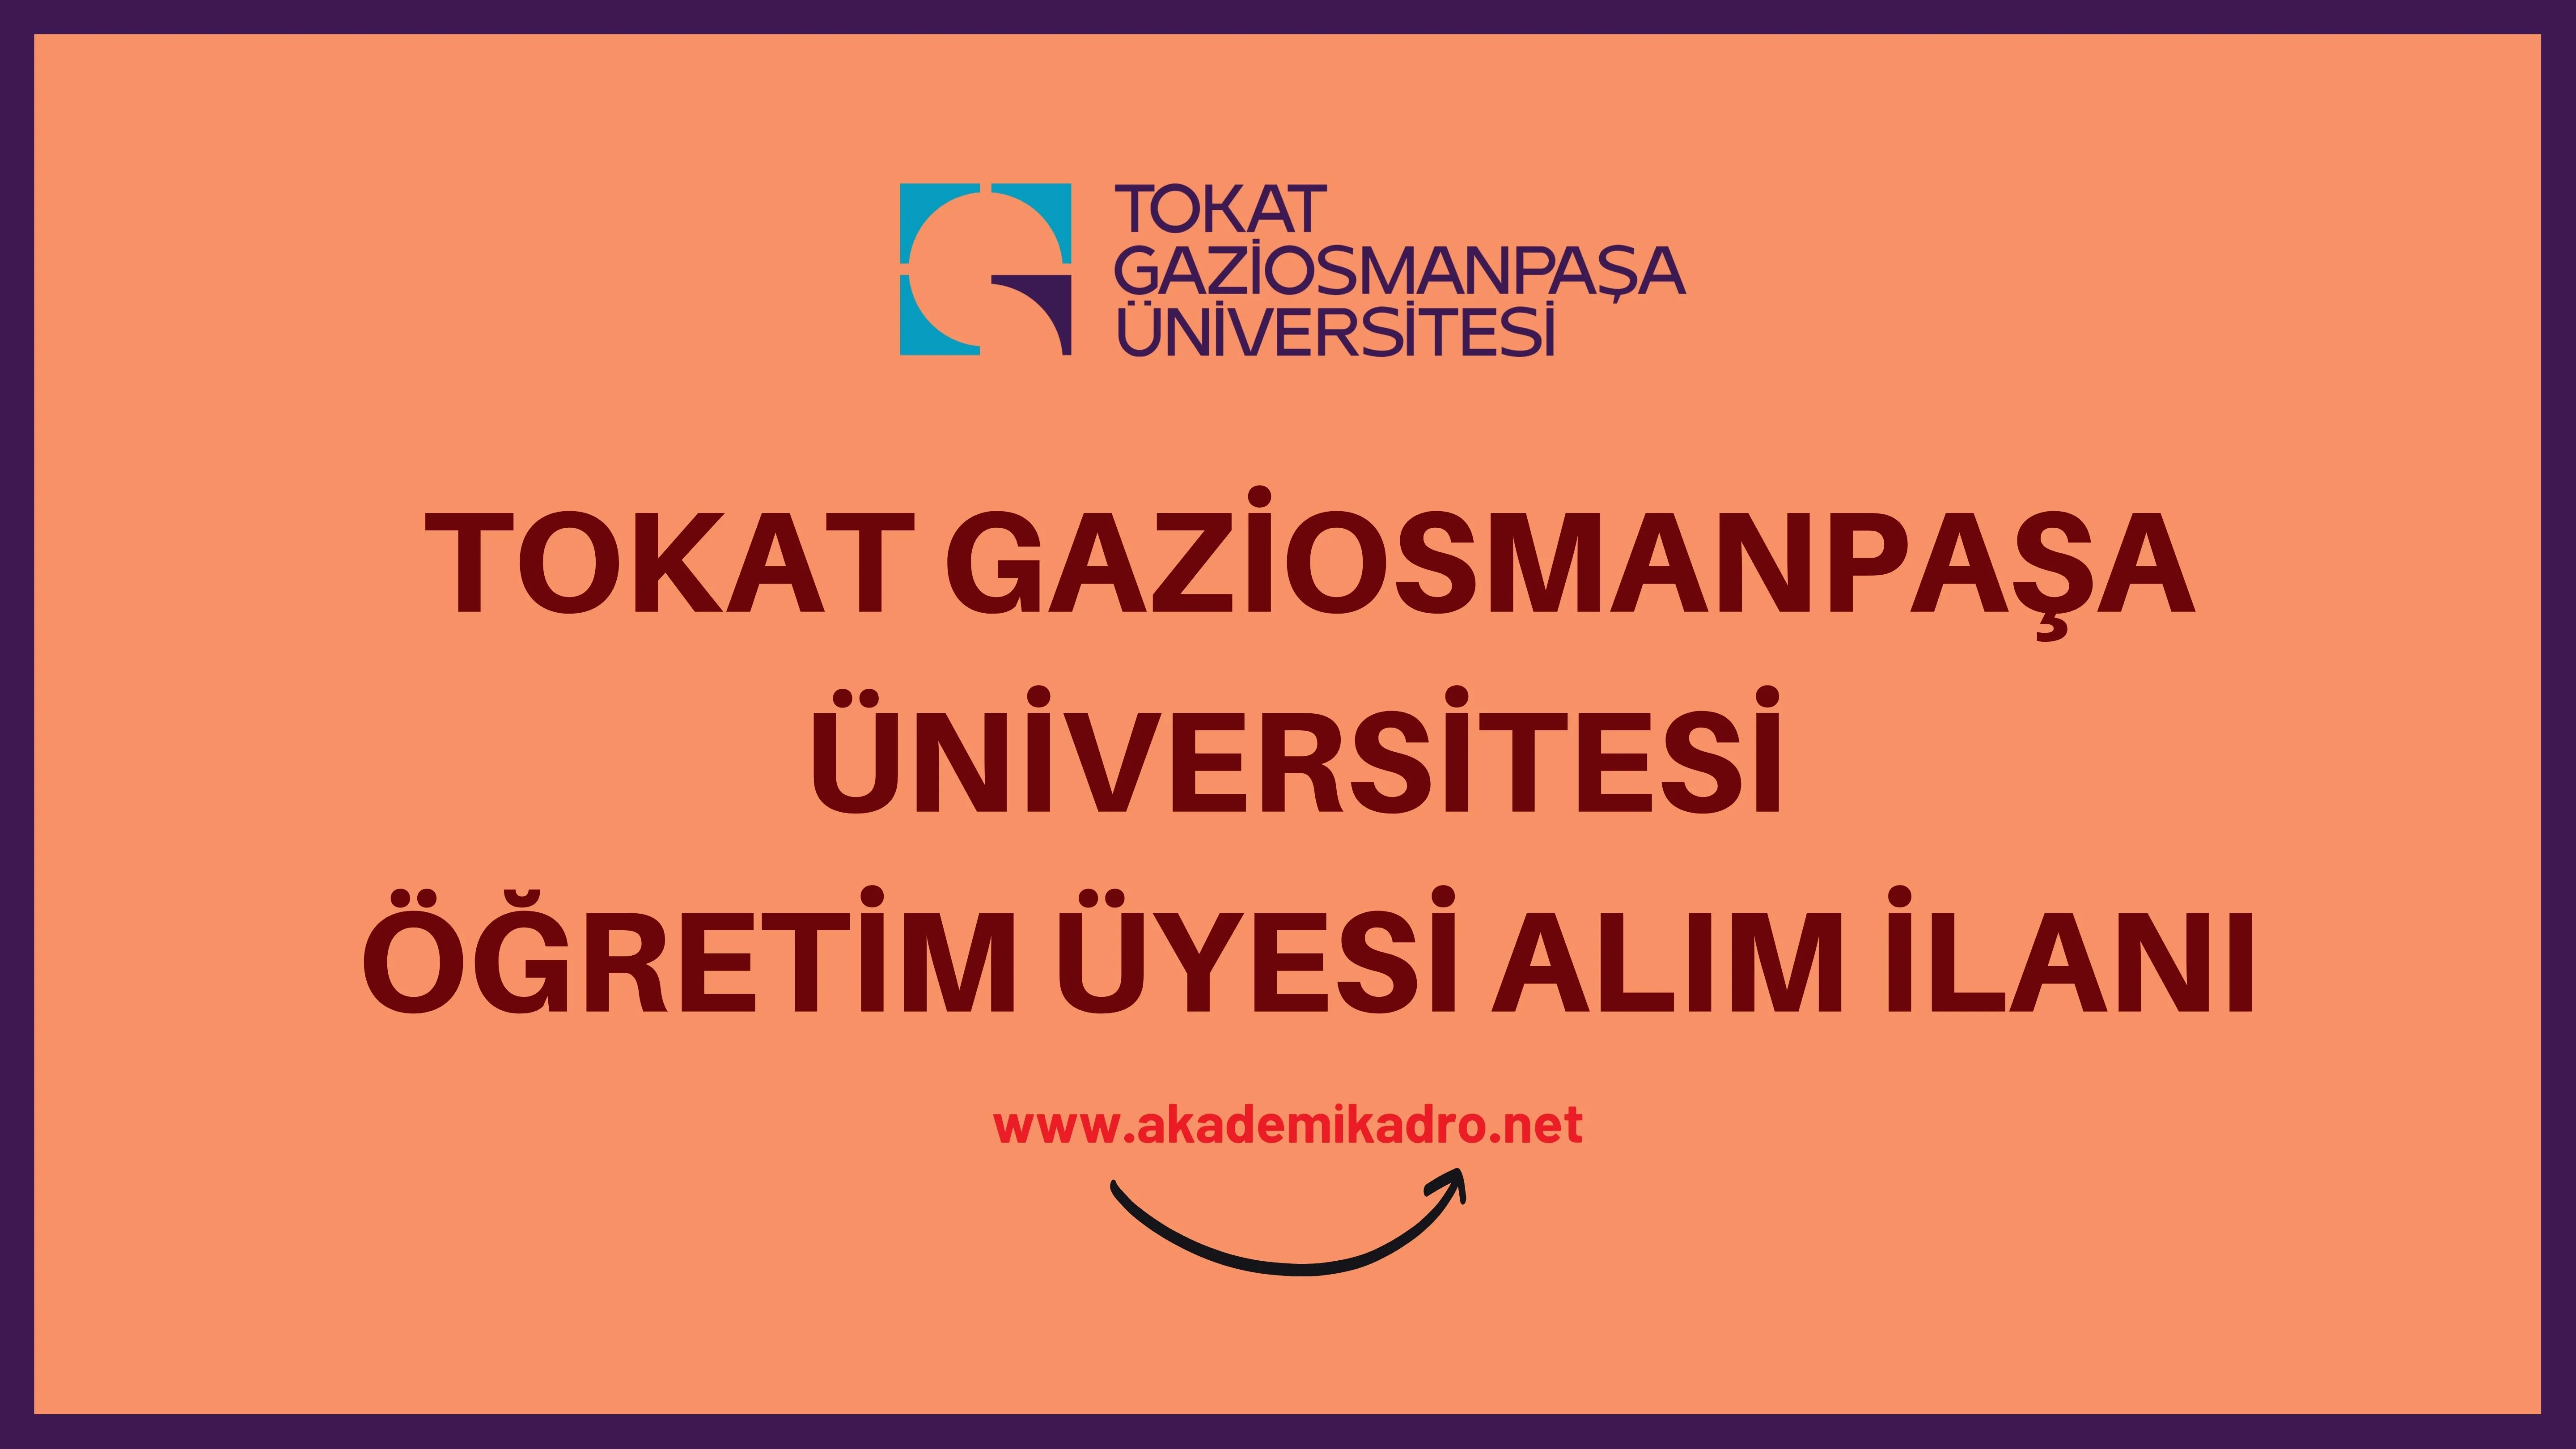 Tokat Gaziosmanpaşa Üniversitesi birçok alandan 27 öğretim üyesi alacak.